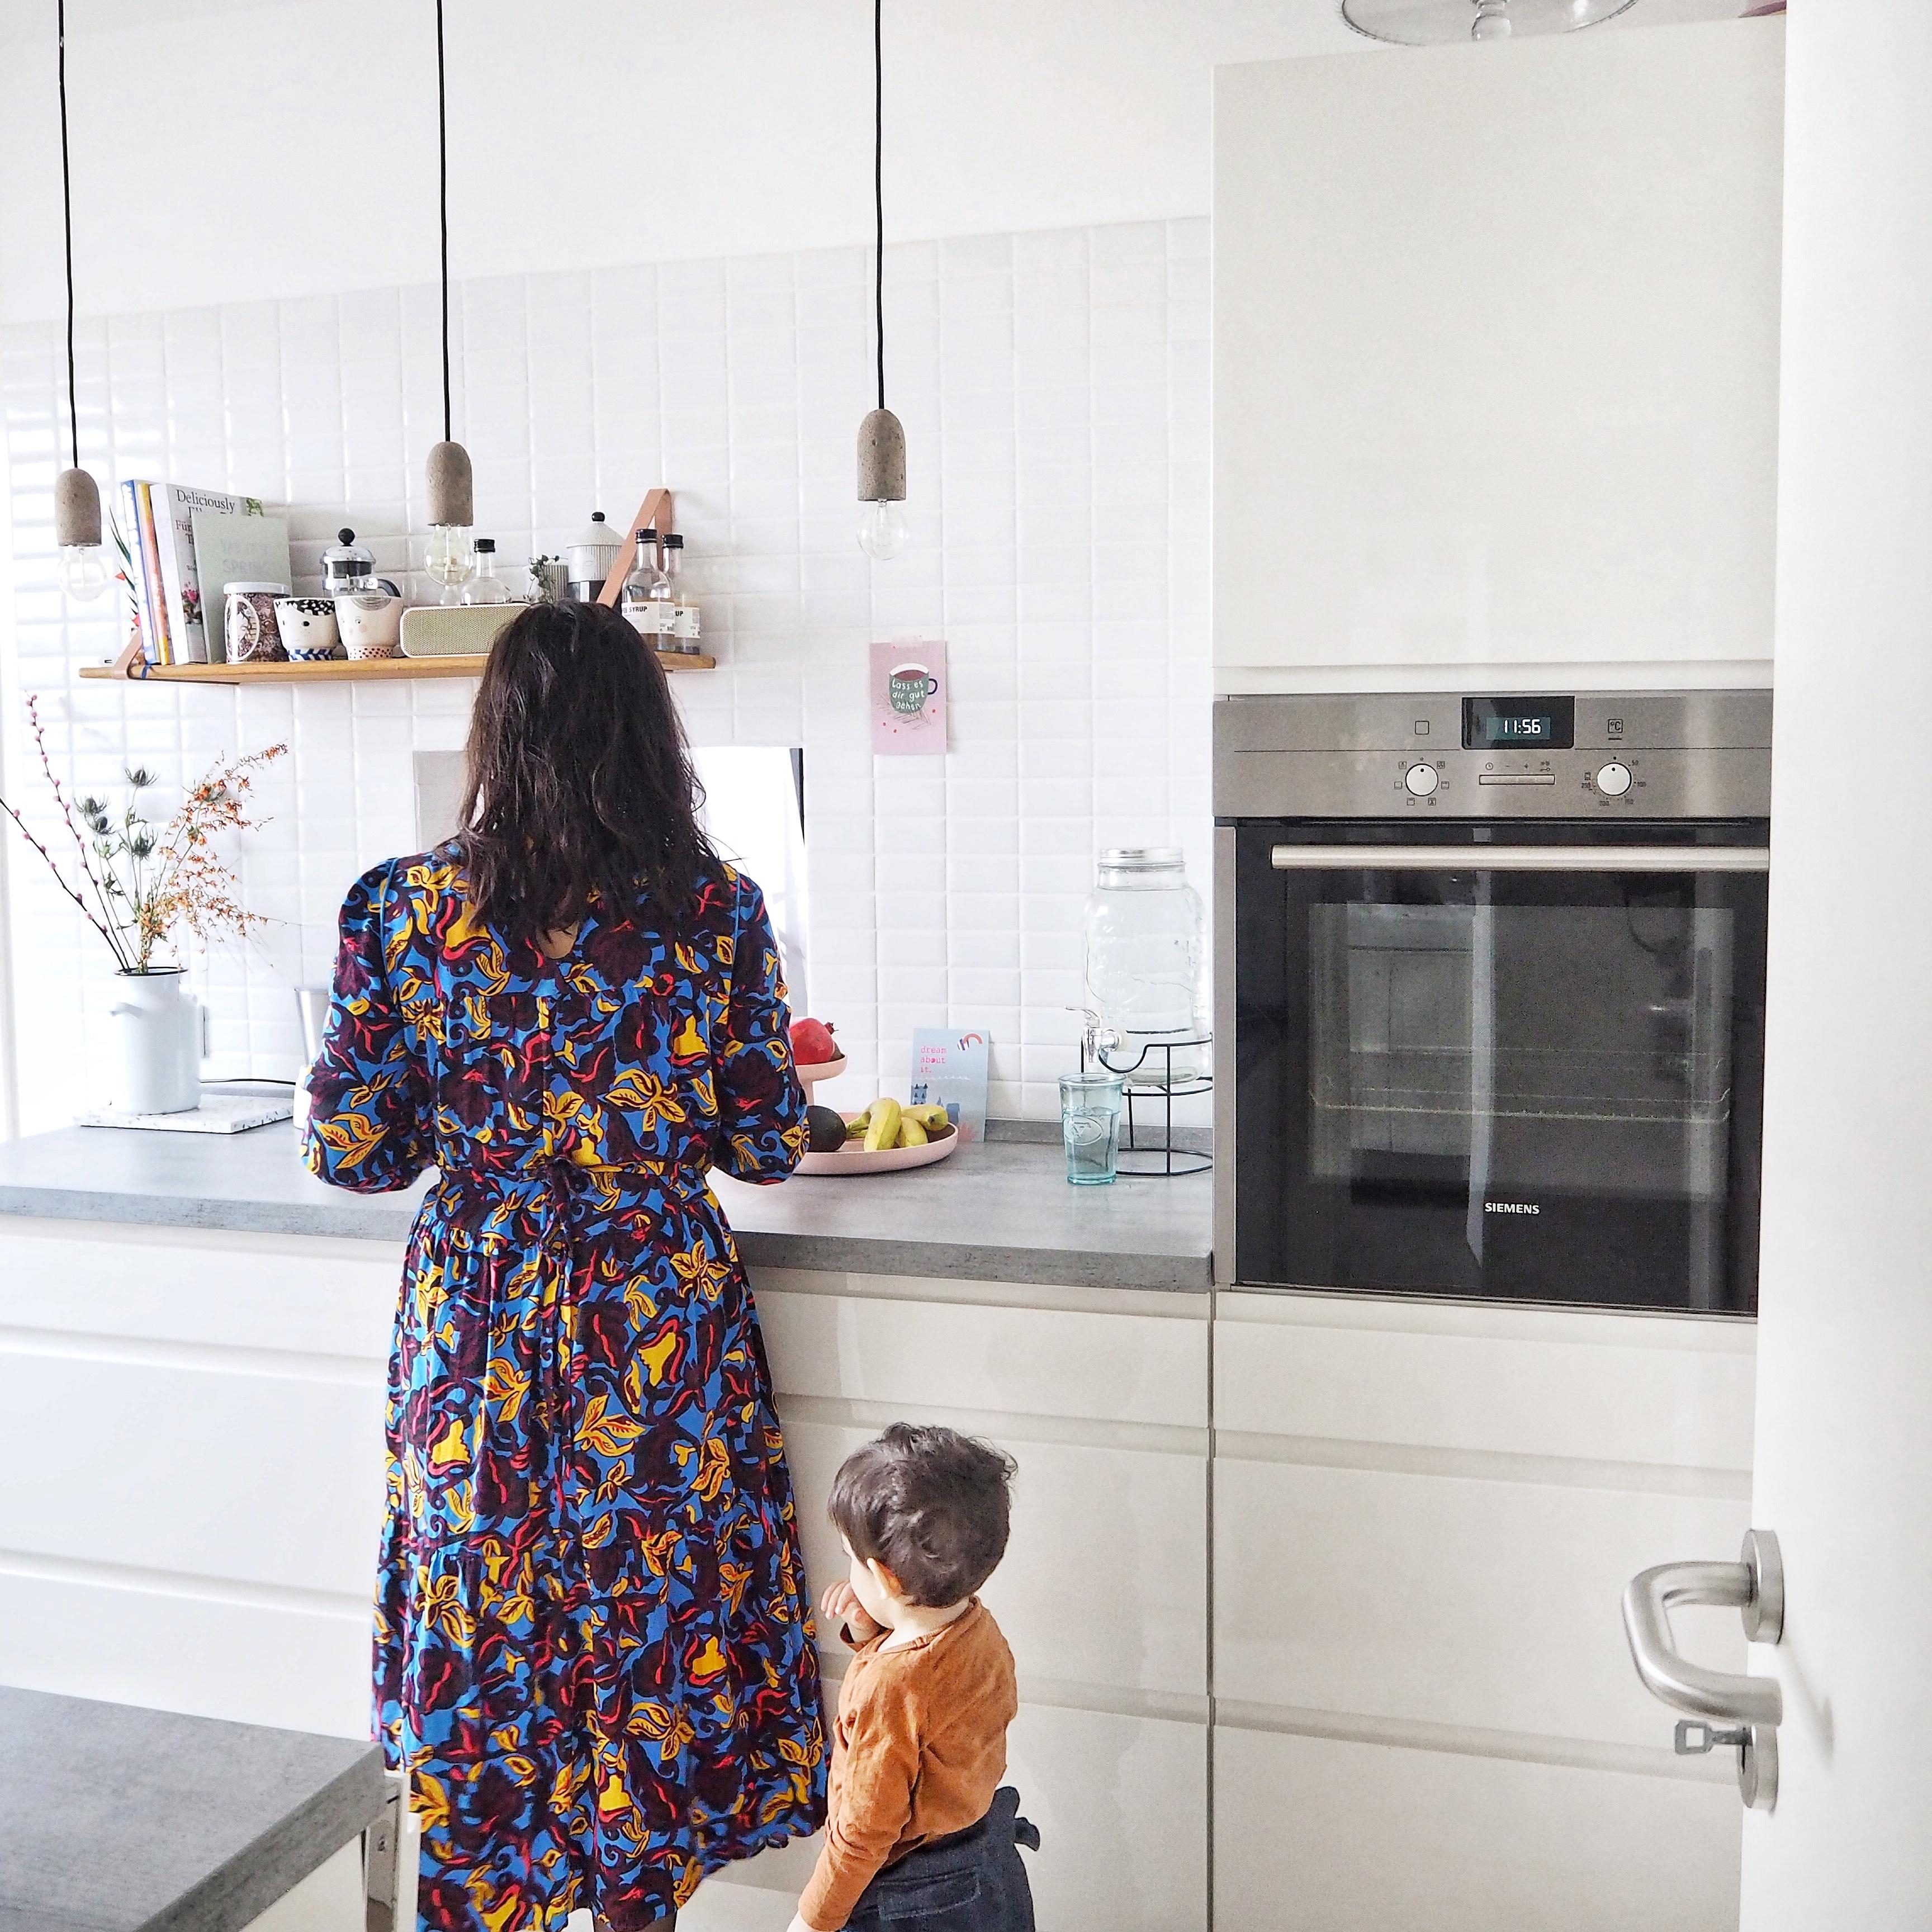 Einblick in unsere Küche, die mir immer noch super gefällt dank Mamas Hilfe beim Planen.
#küche #küchenliebe